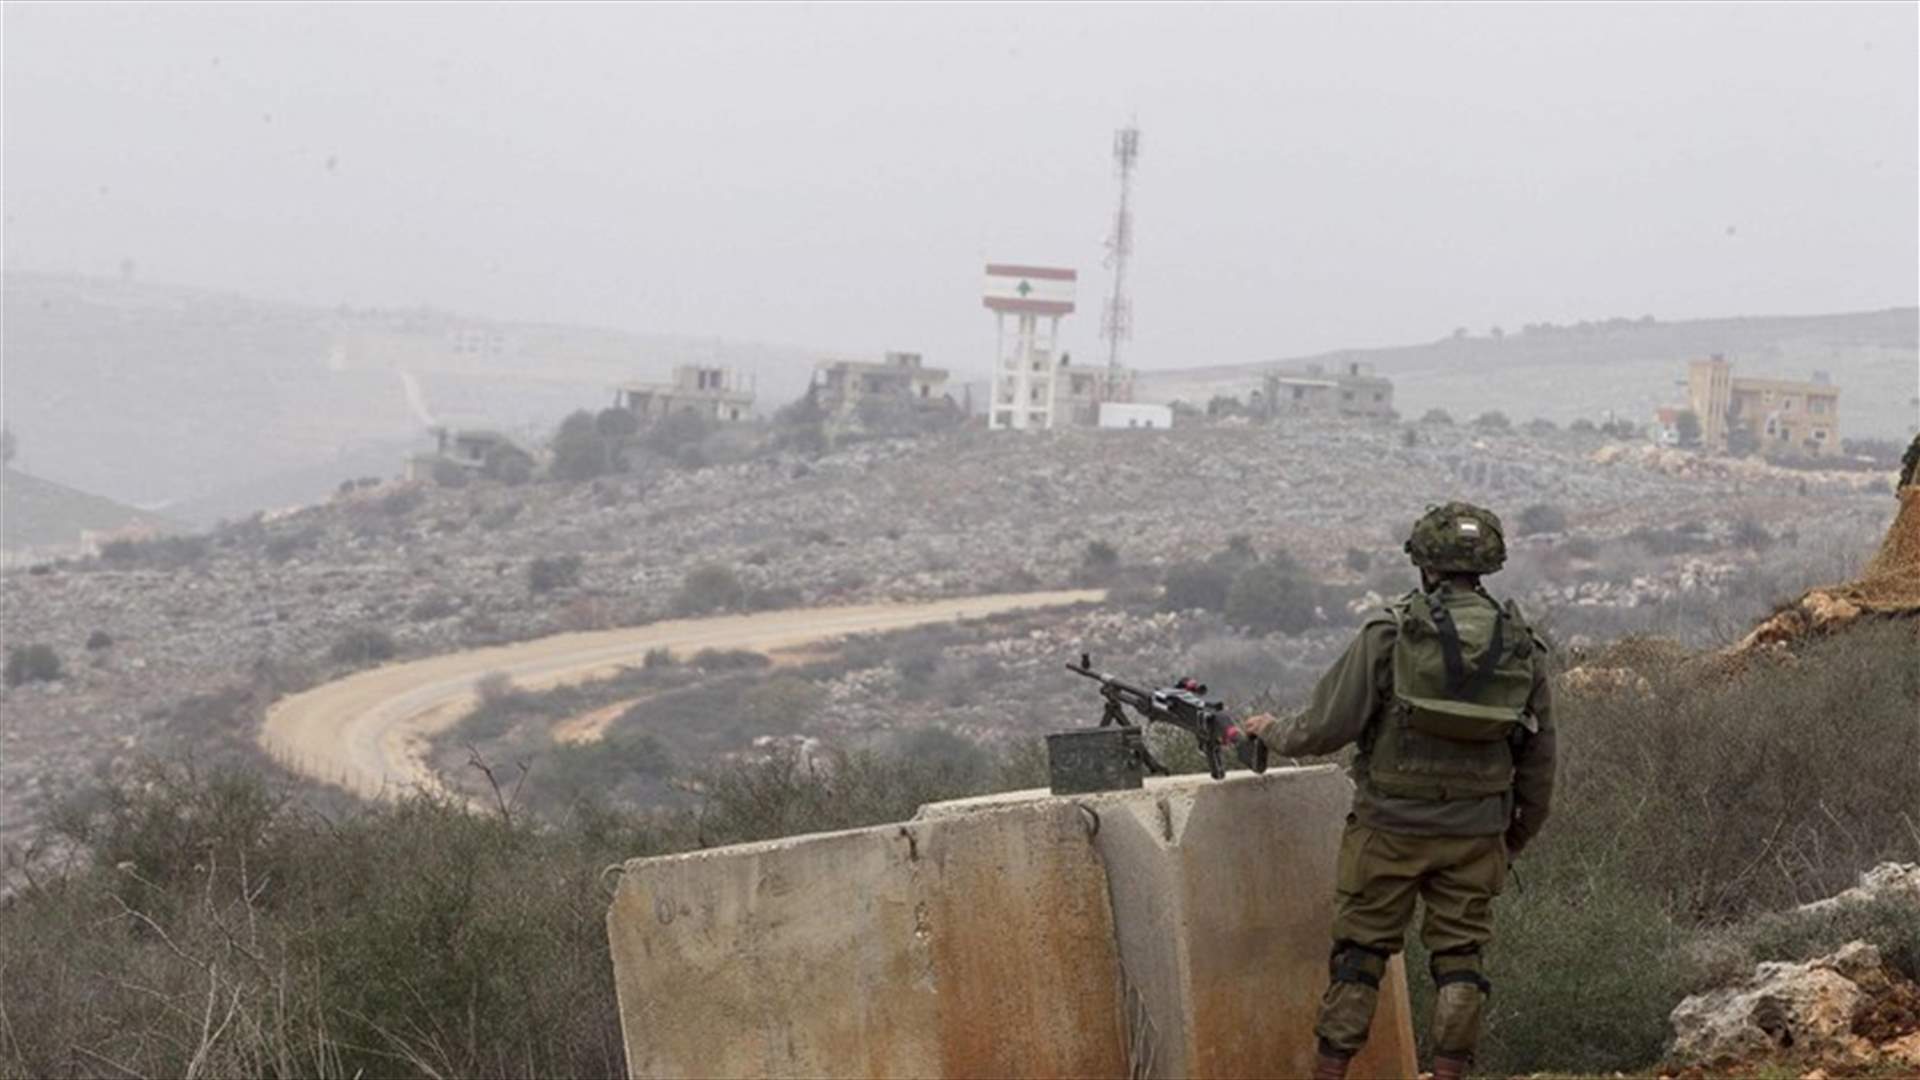 دورية راجلة للجيش الإسرائيلي قامت بملاحقة أحد الرعاة عند الحدود... وهذا ما حصل